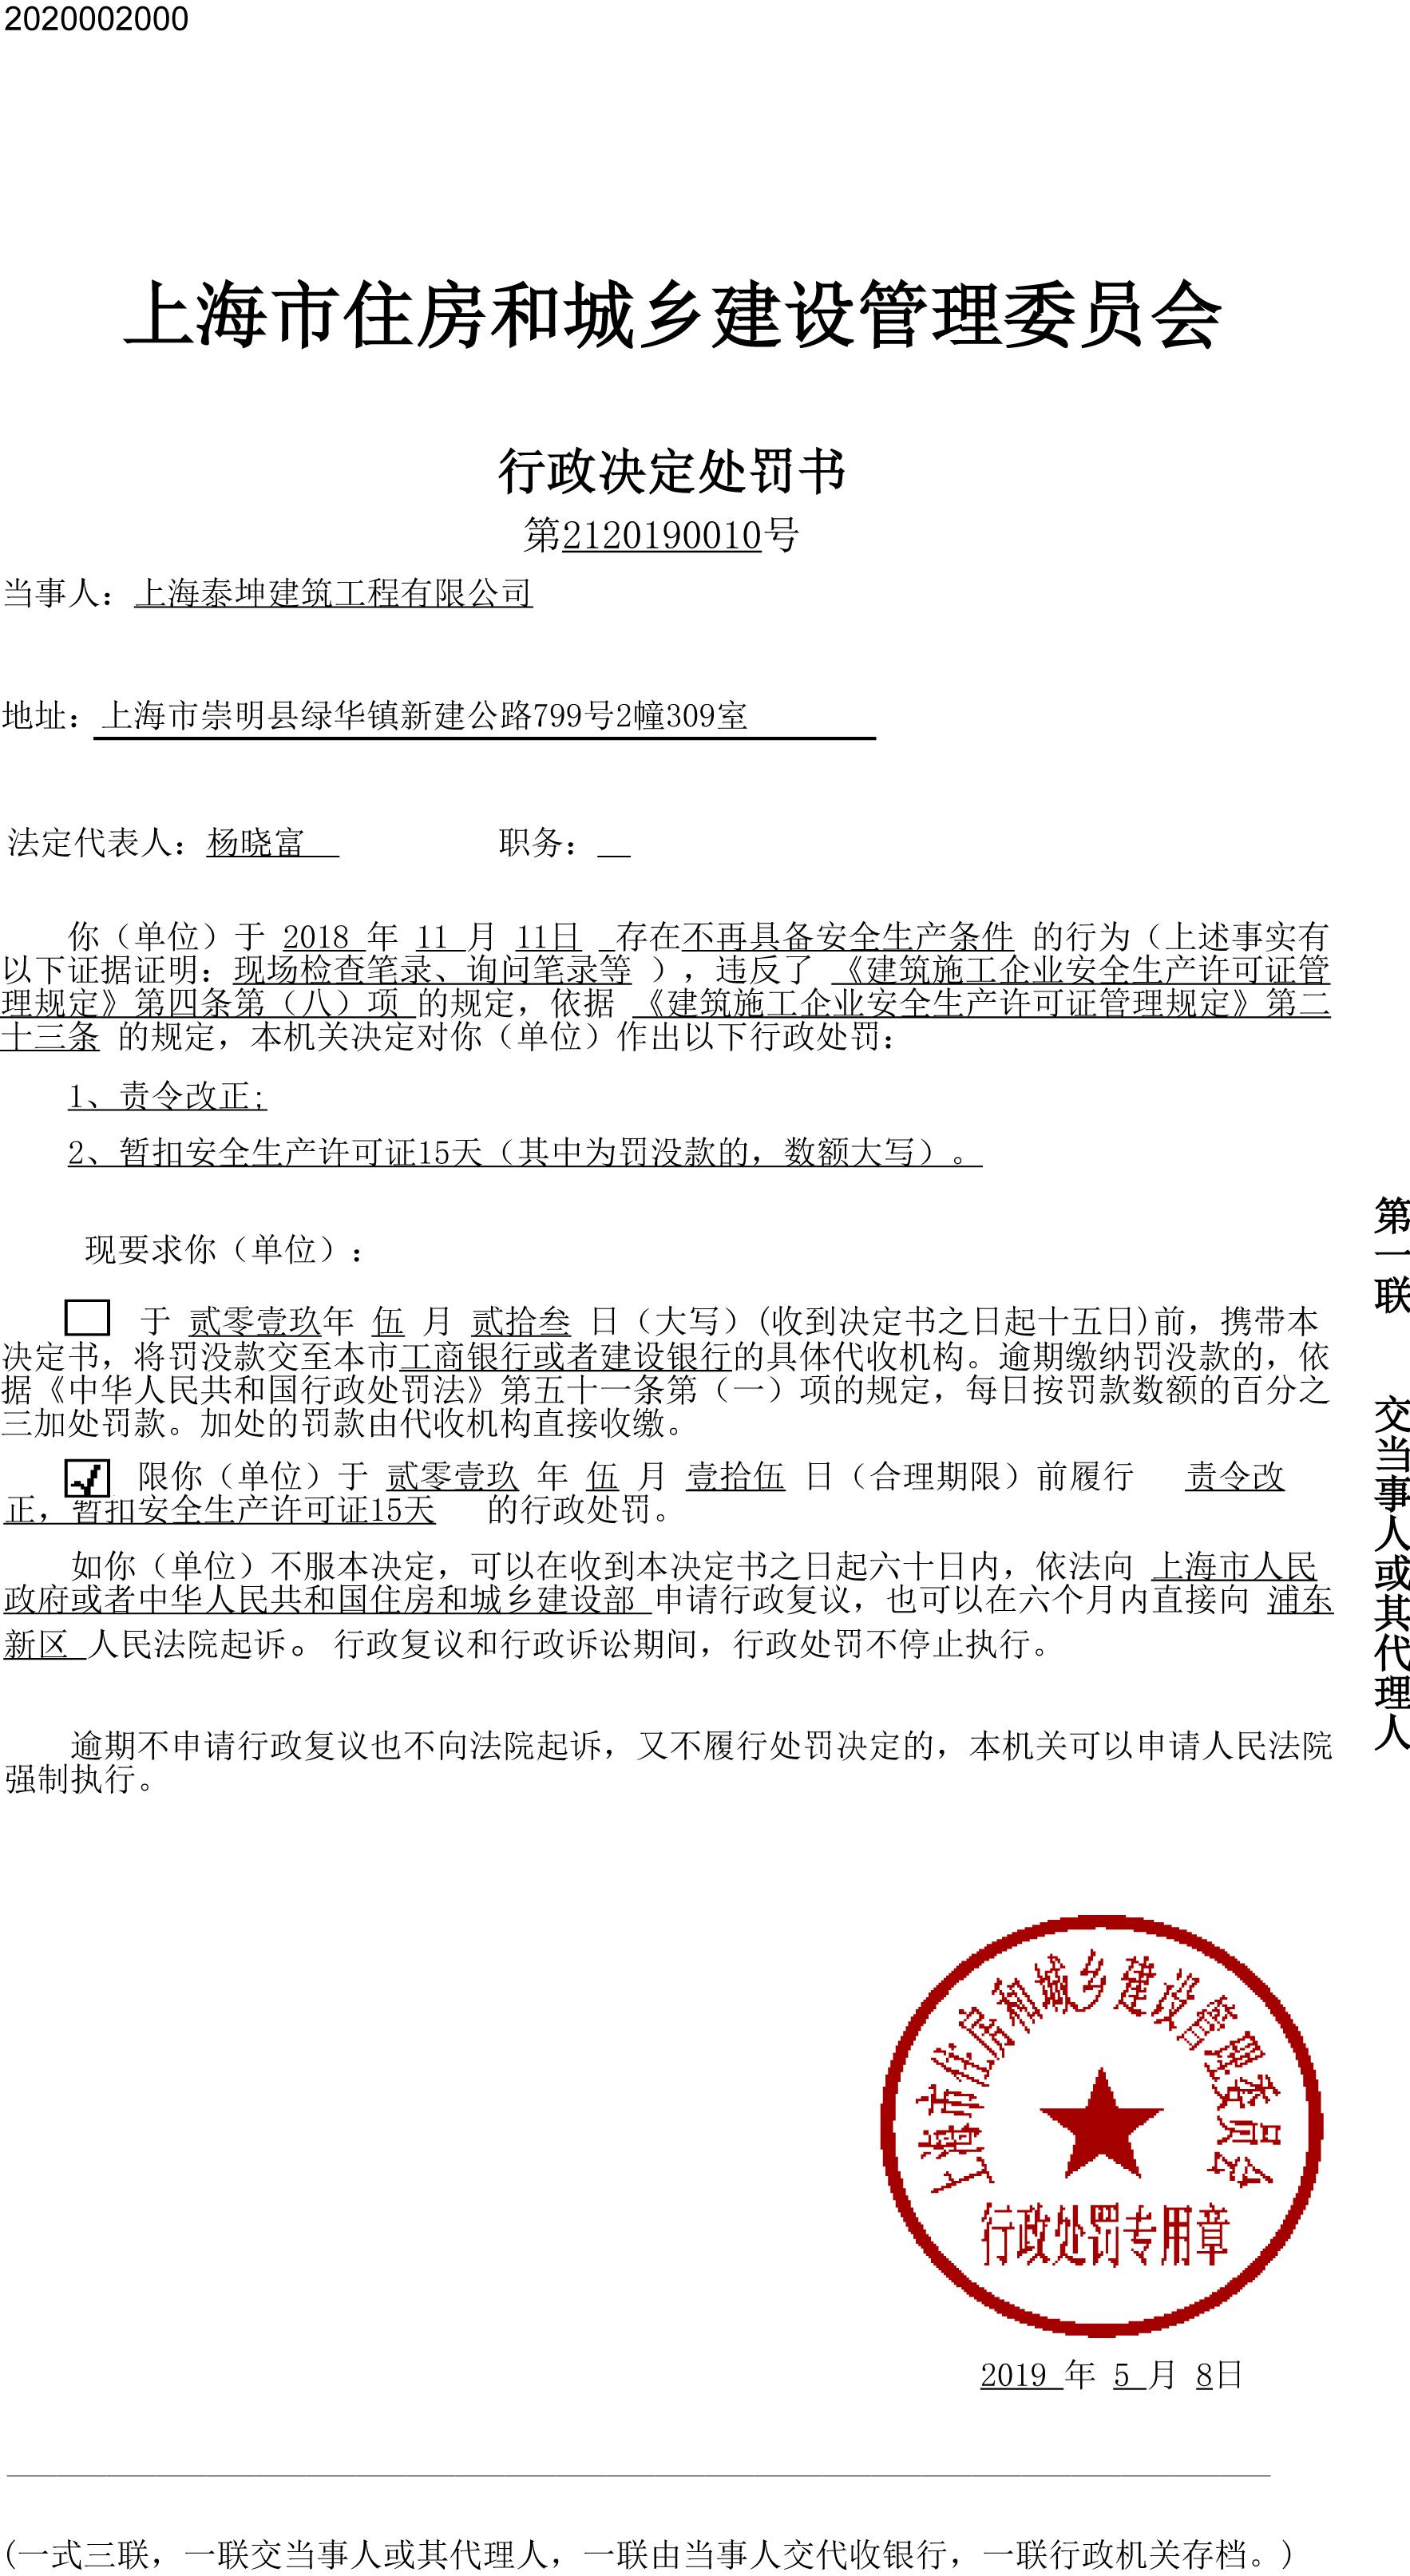 上海泰坤建筑工程有限公司存在安全隐患被处罚